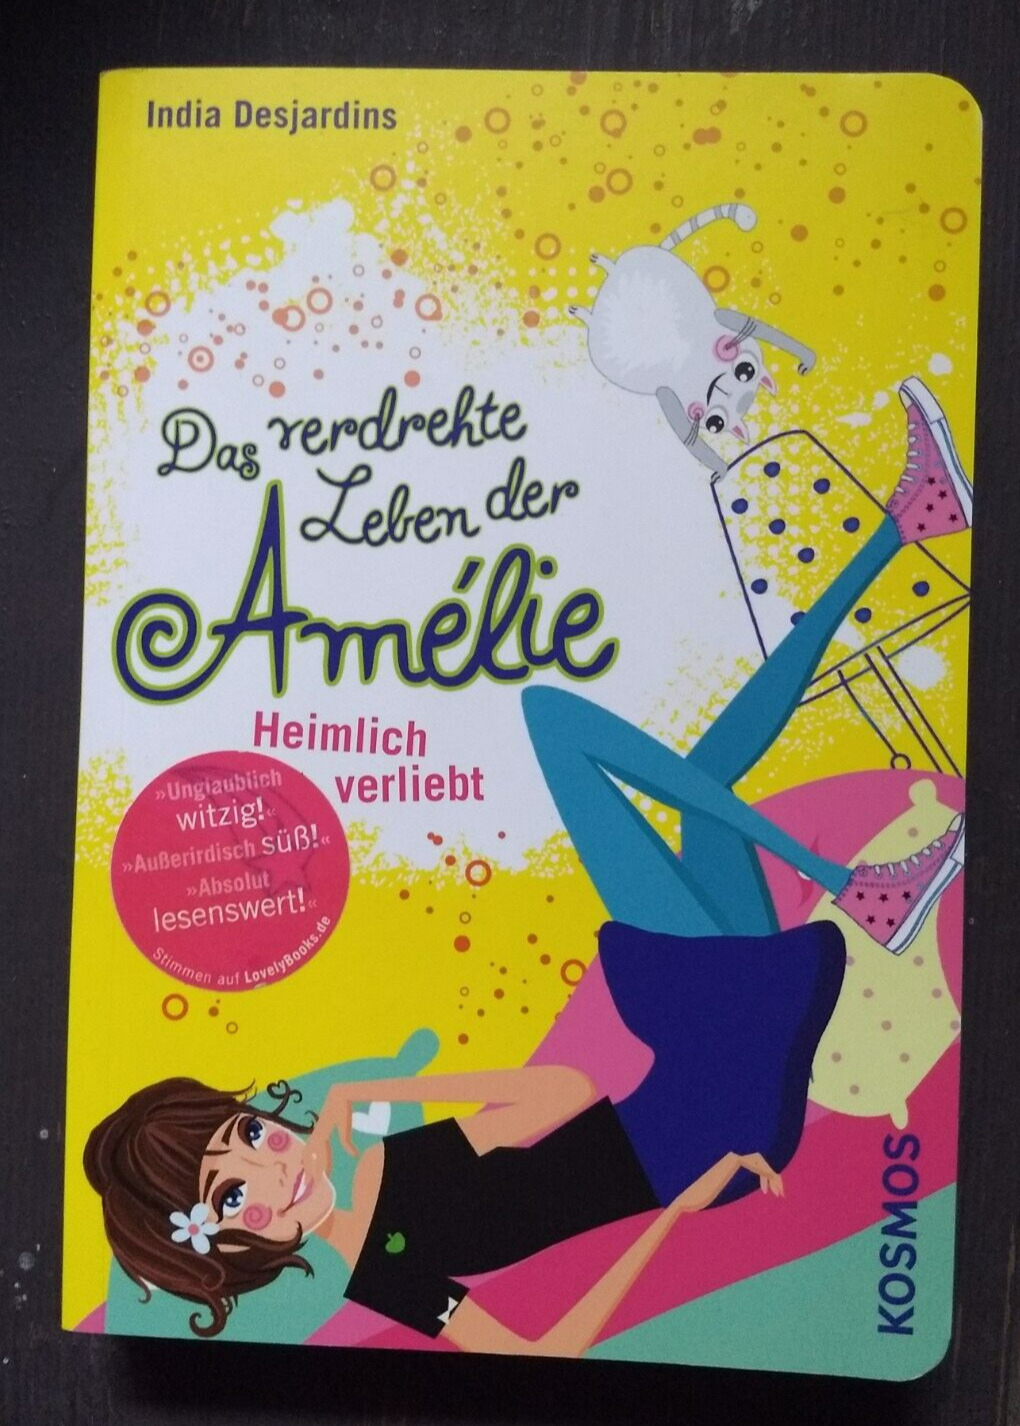 Das verdrehte Leben der Amélie /Heimlich verliebt von India Desjardins / NEU! - India Desjardins